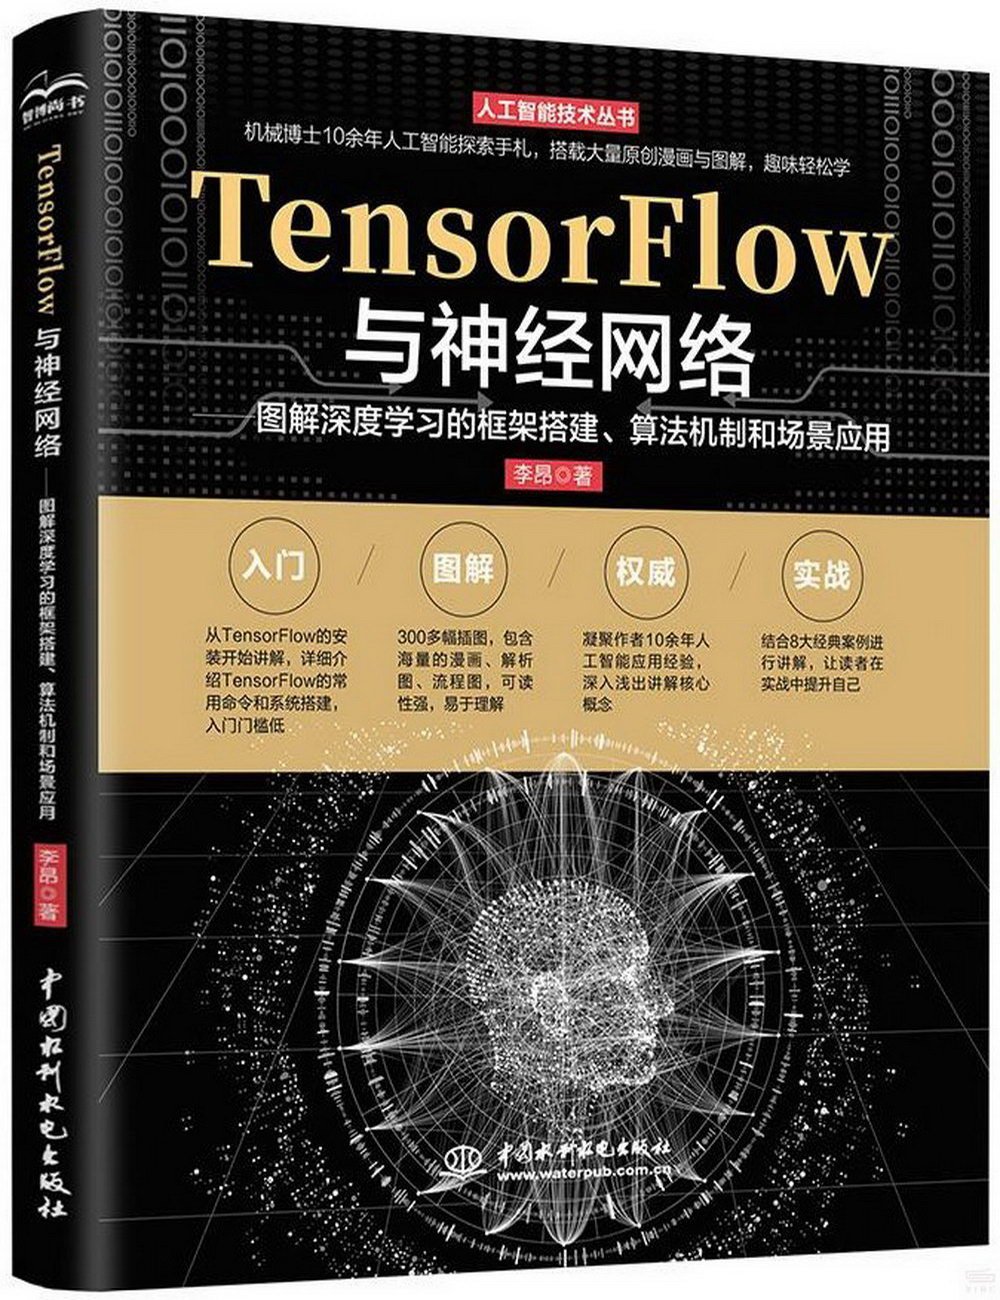 TensorFlow與神經網絡：圖解深度學習的框架搭建、算法機制和場景應用